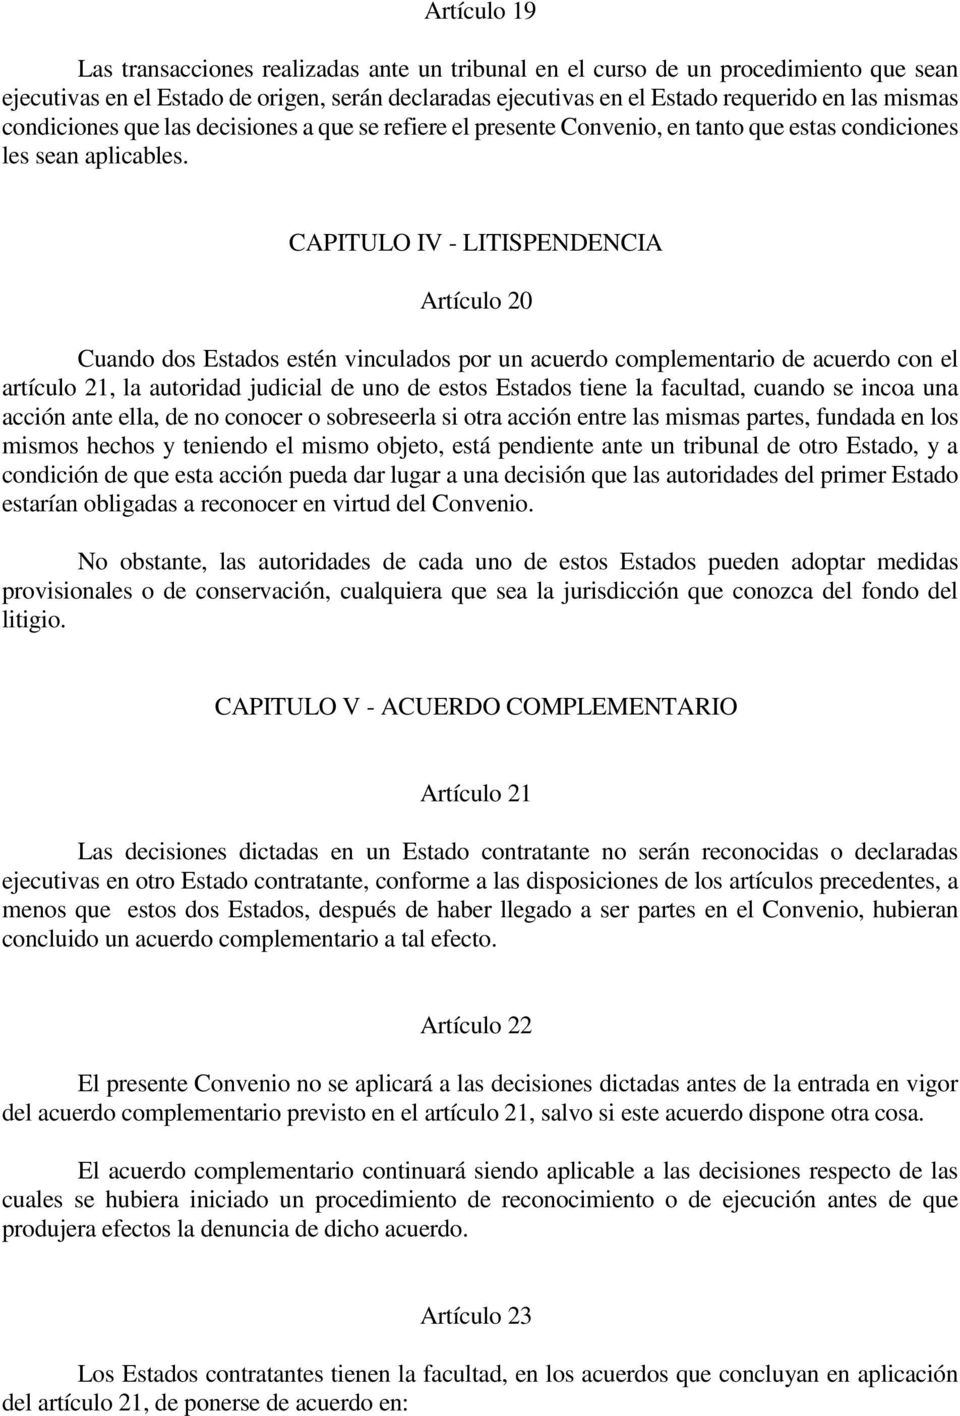 CAPITULO IV - LITISPENDENCIA Artículo 20 Cuando dos Estados estén vinculados por un acuerdo complementario de acuerdo con el artículo 21, la autoridad judicial de uno de estos Estados tiene la